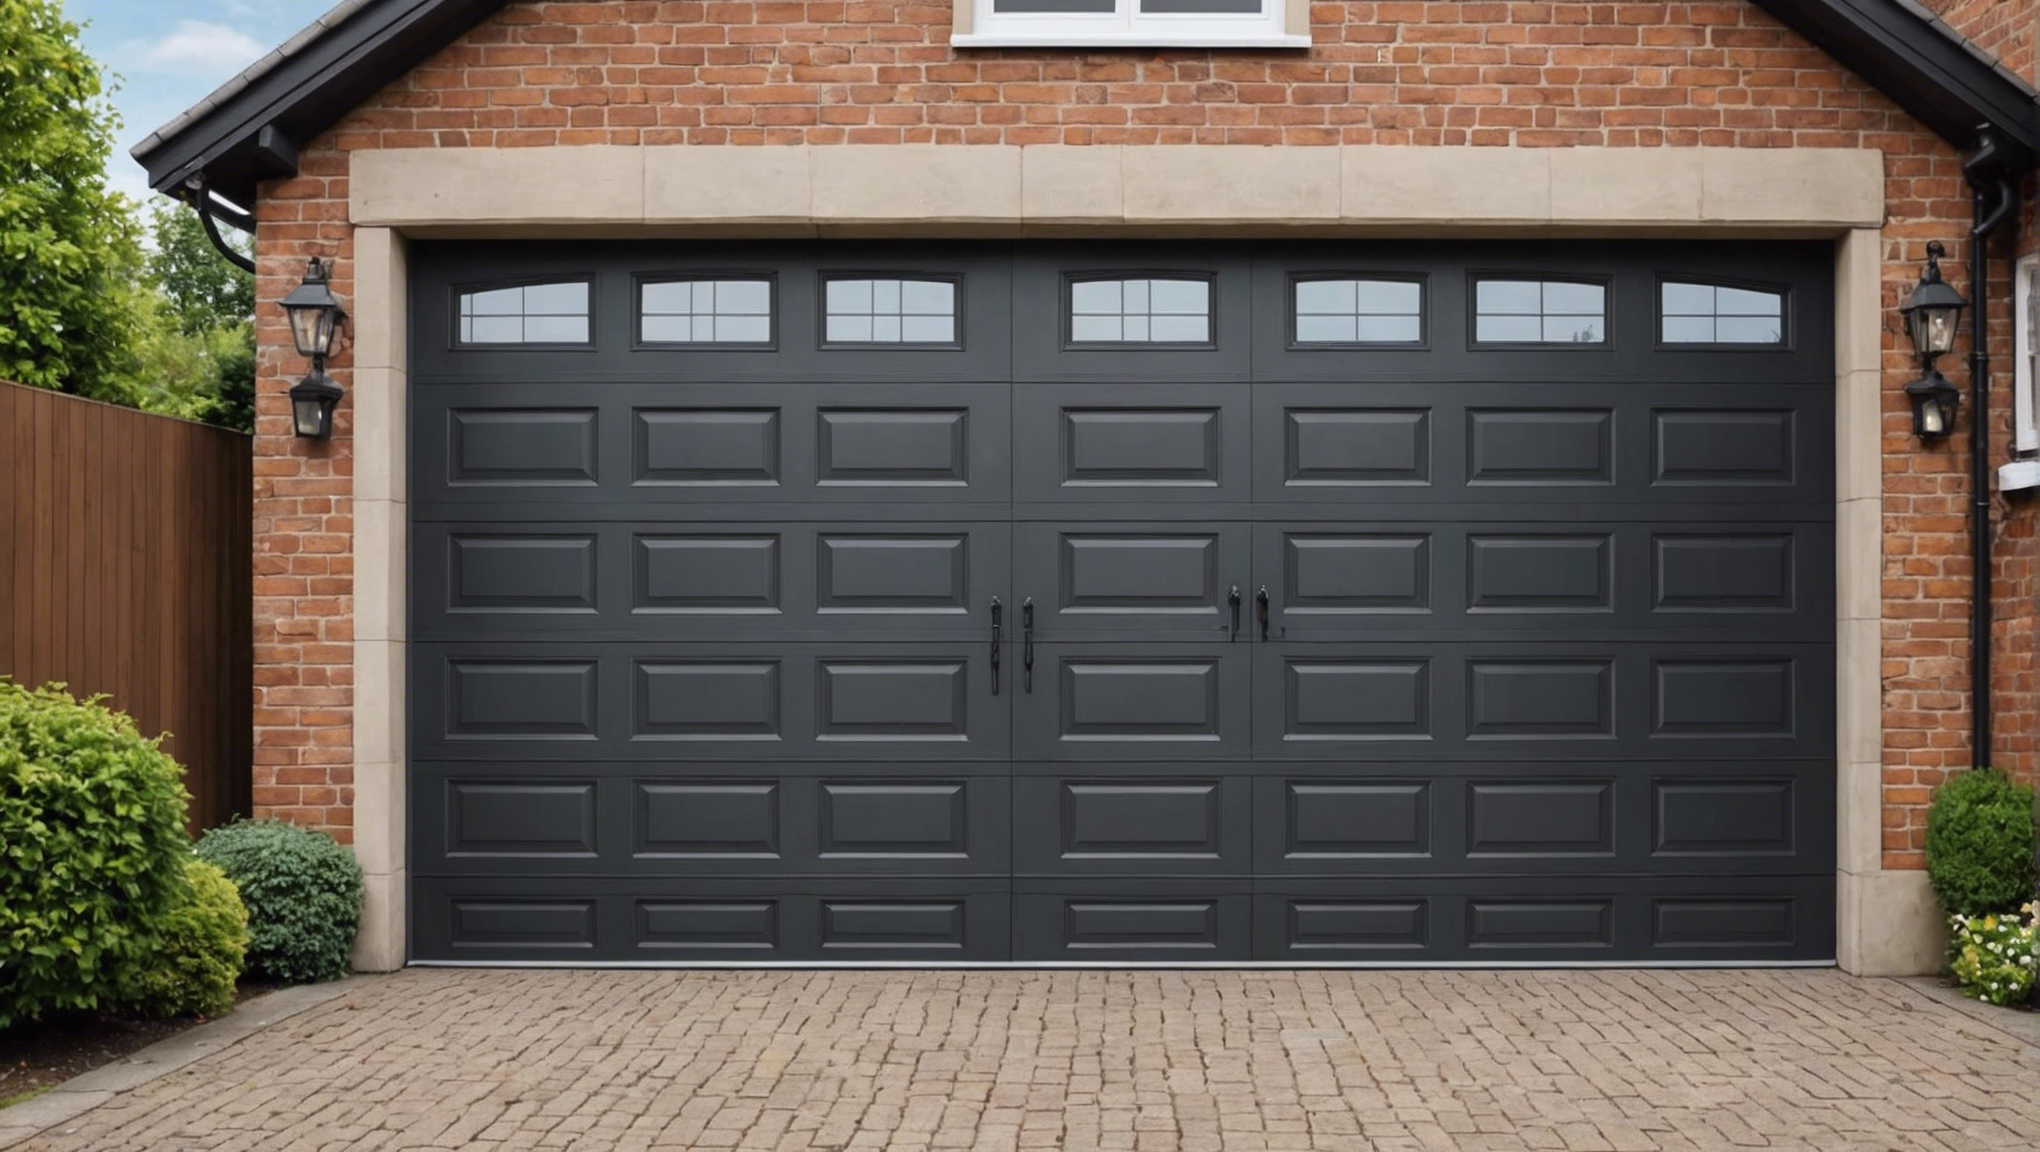 découvrez les critères à prendre en compte pour choisir la porte de garage idéale : matériaux, dimensions, style, motorisation, etc. conseils pratiques et guide d'achat.